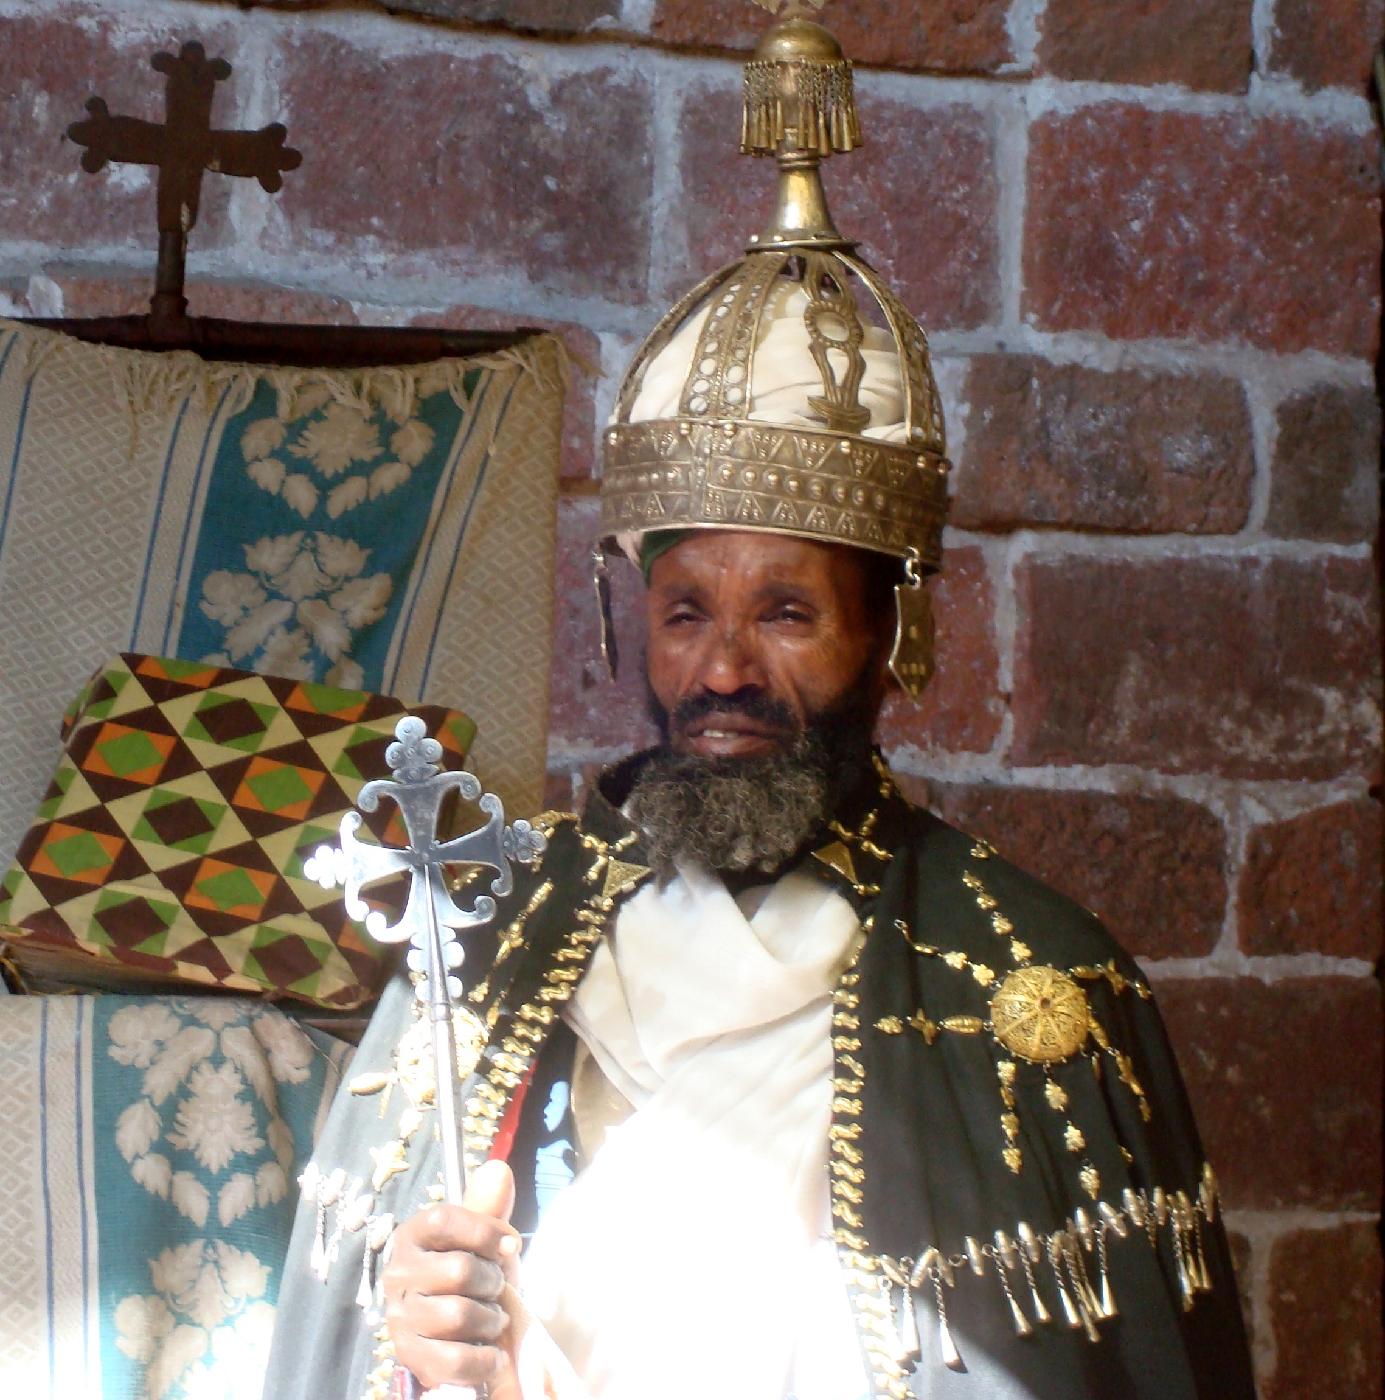 DSC035920.jpg - Un abba qui a revtu un manteau sacerdotal prsente une croix et une couronne